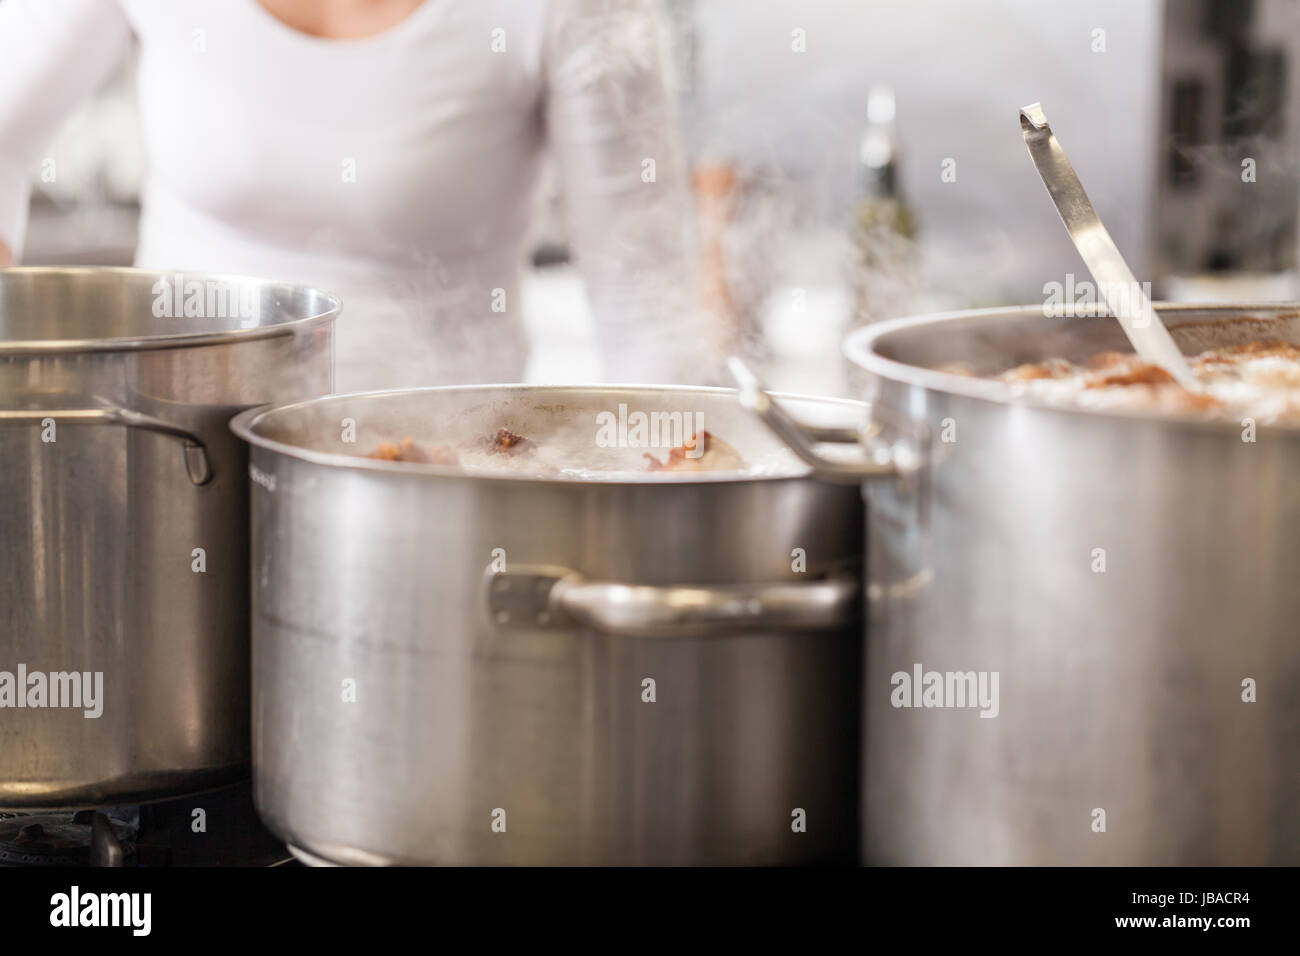 Gastronomie ristorante küche mit kochfeld und dampfenden töpfen beim kochen essen zubereiten cena Foto Stock